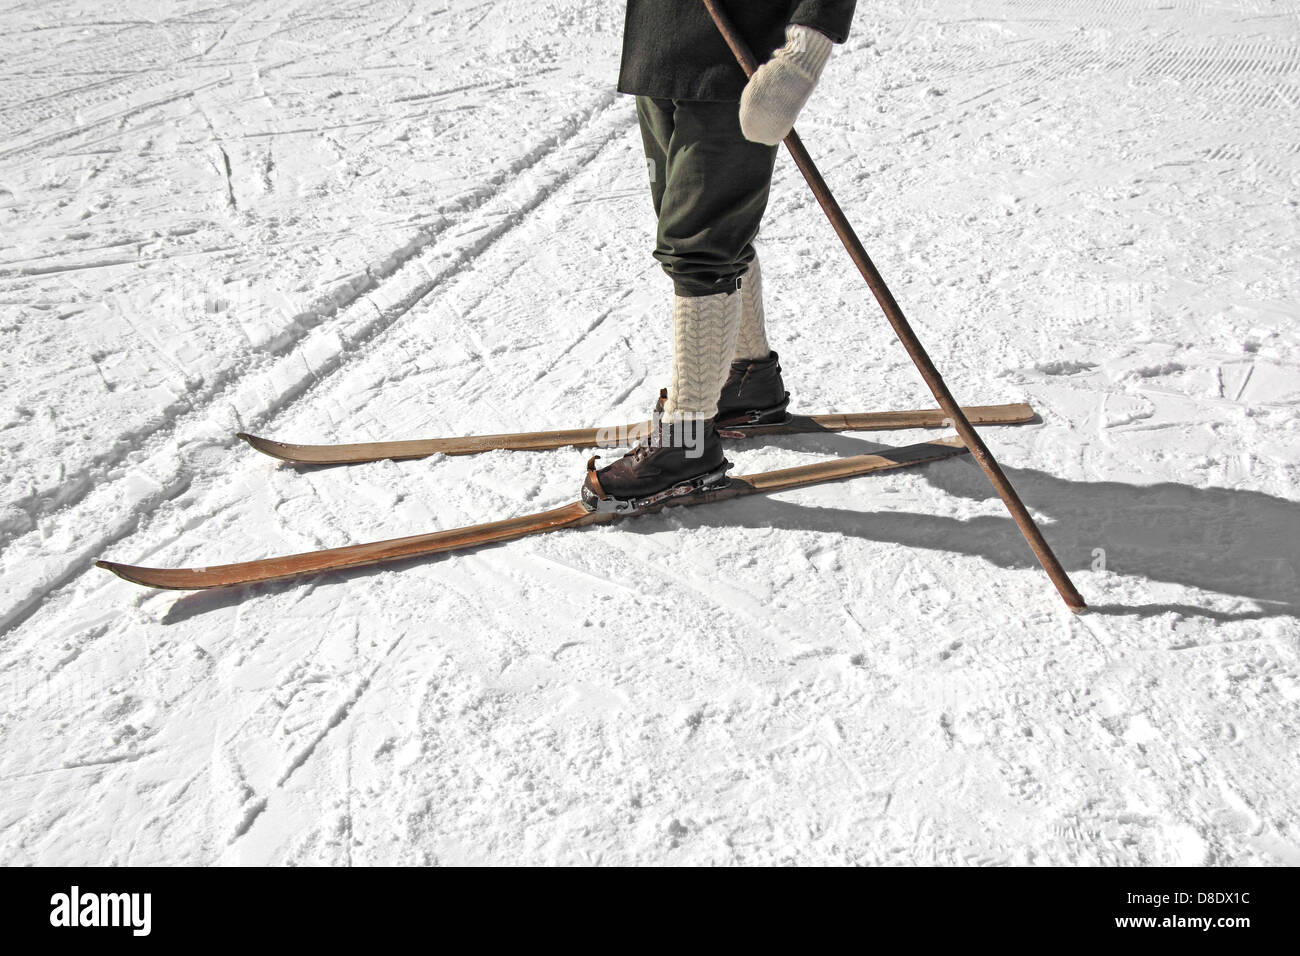 Vieux skis en bois et en cuir chaussures de ski Photo Stock - Alamy